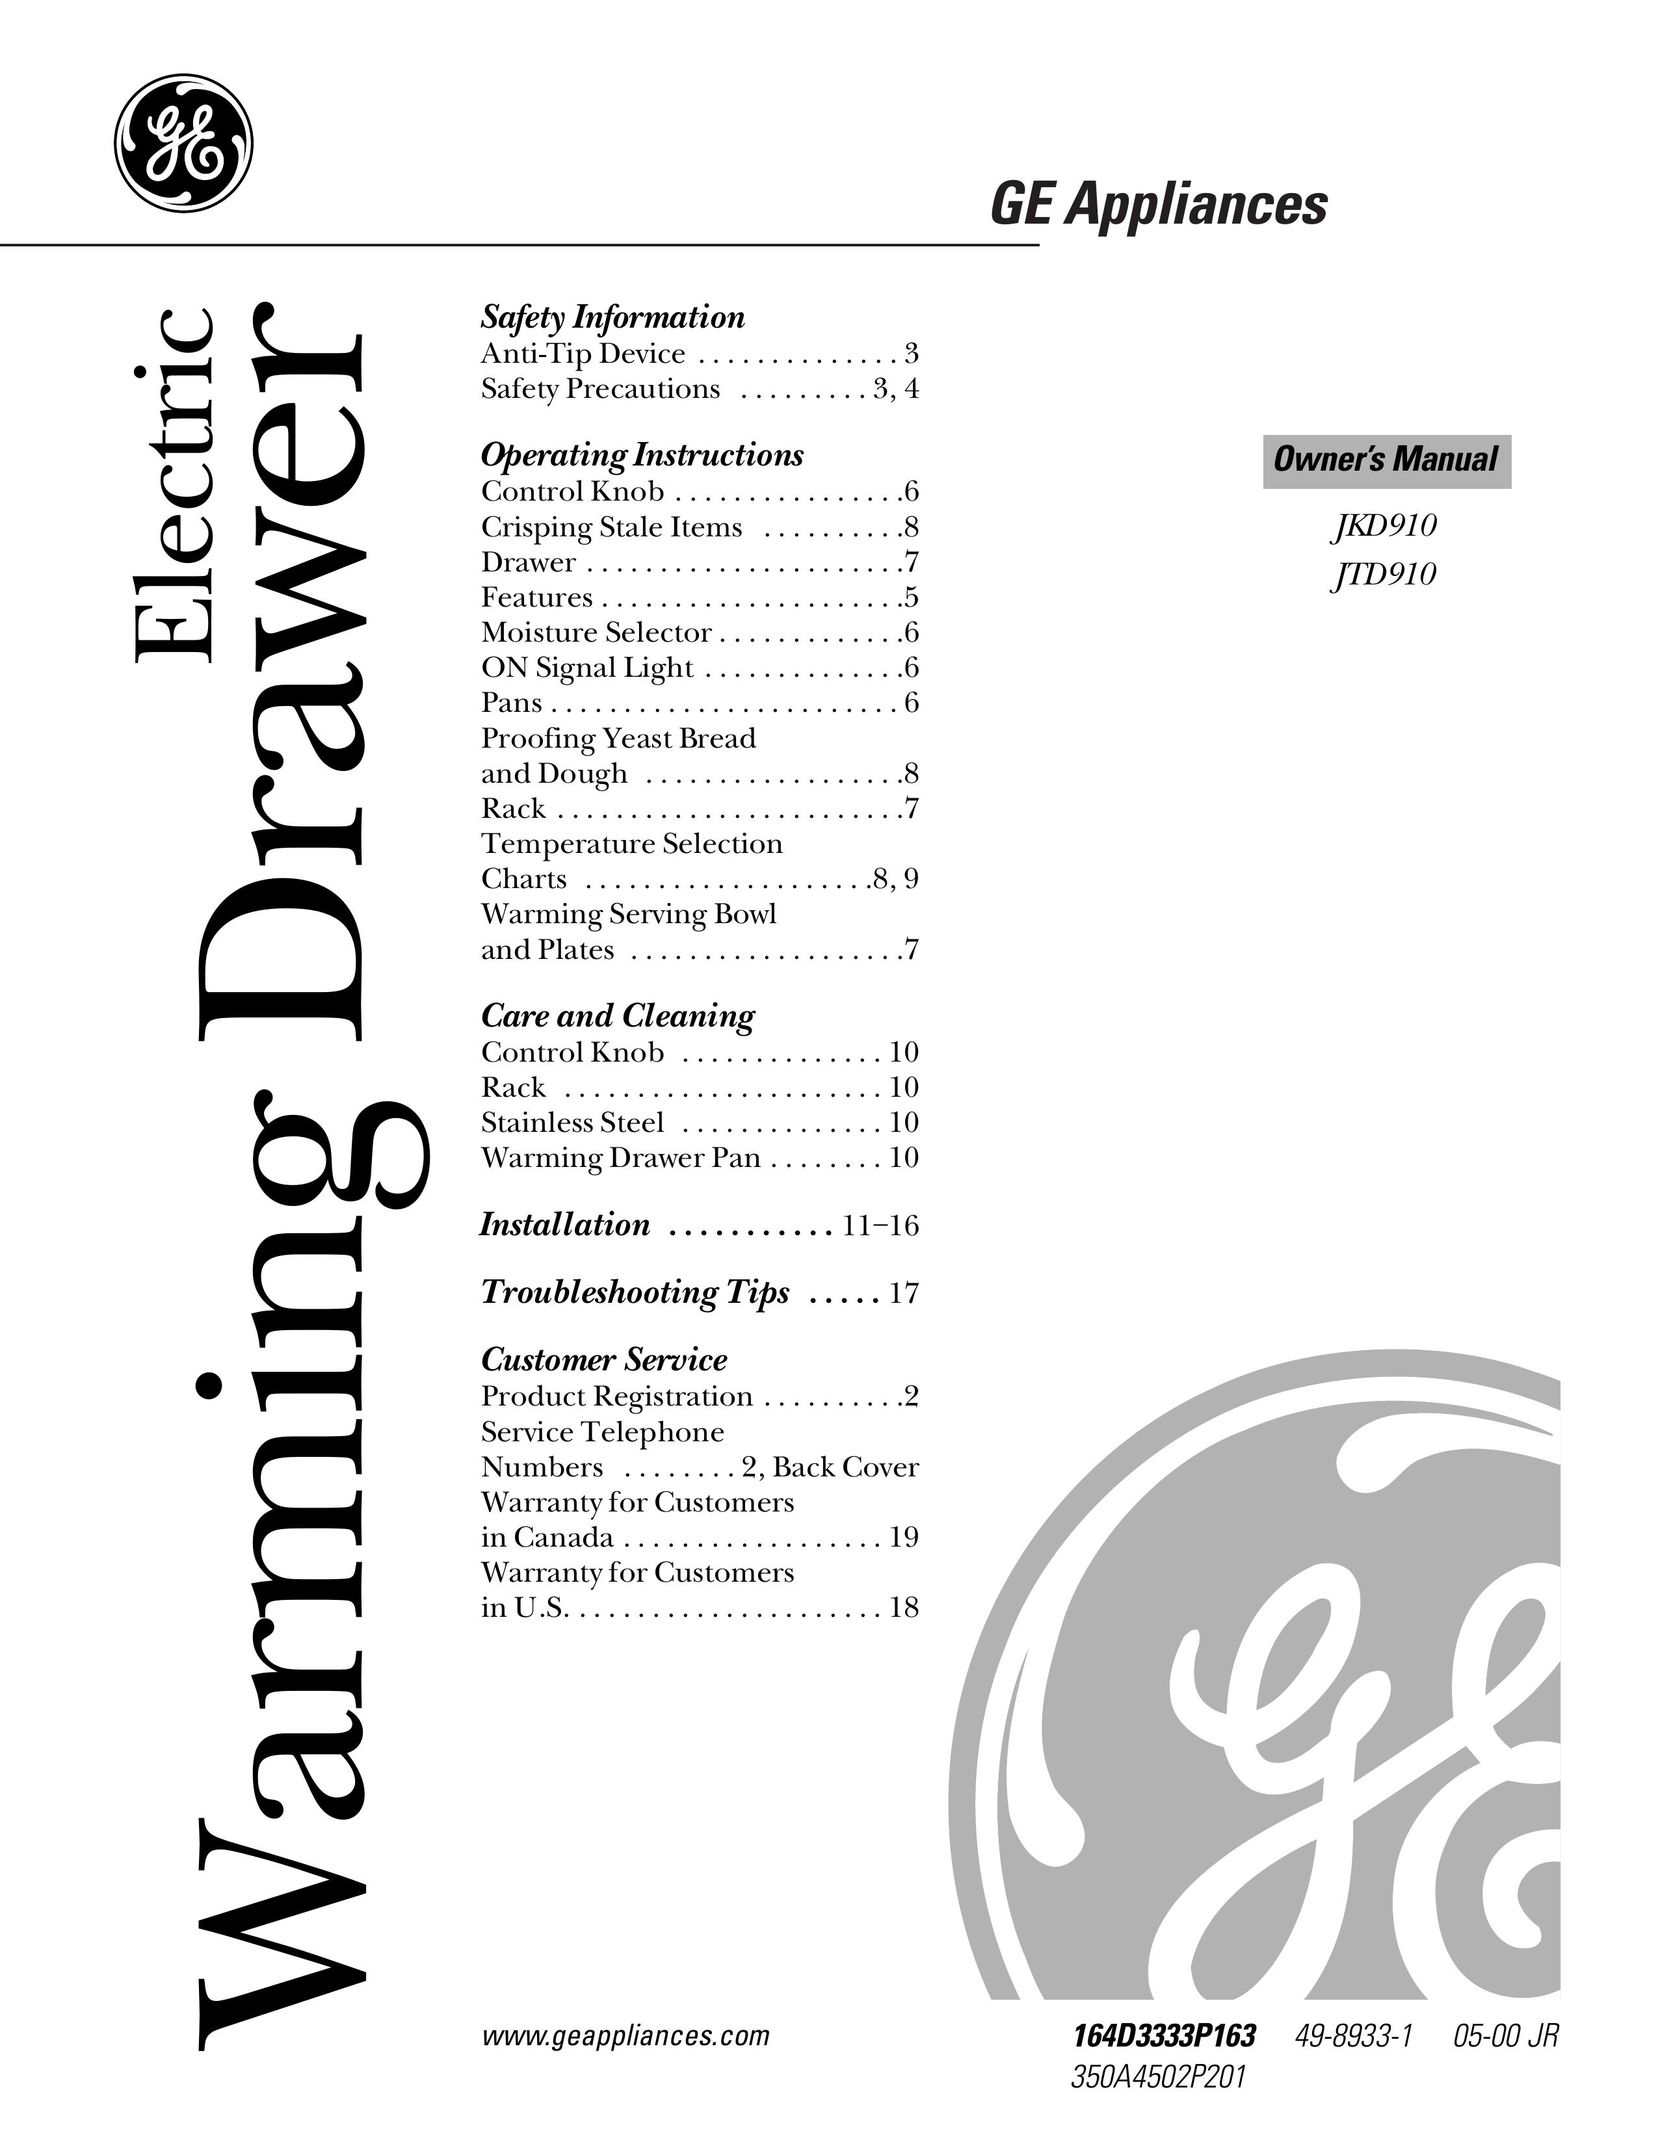 GE JKD910 Food Warmer User Manual